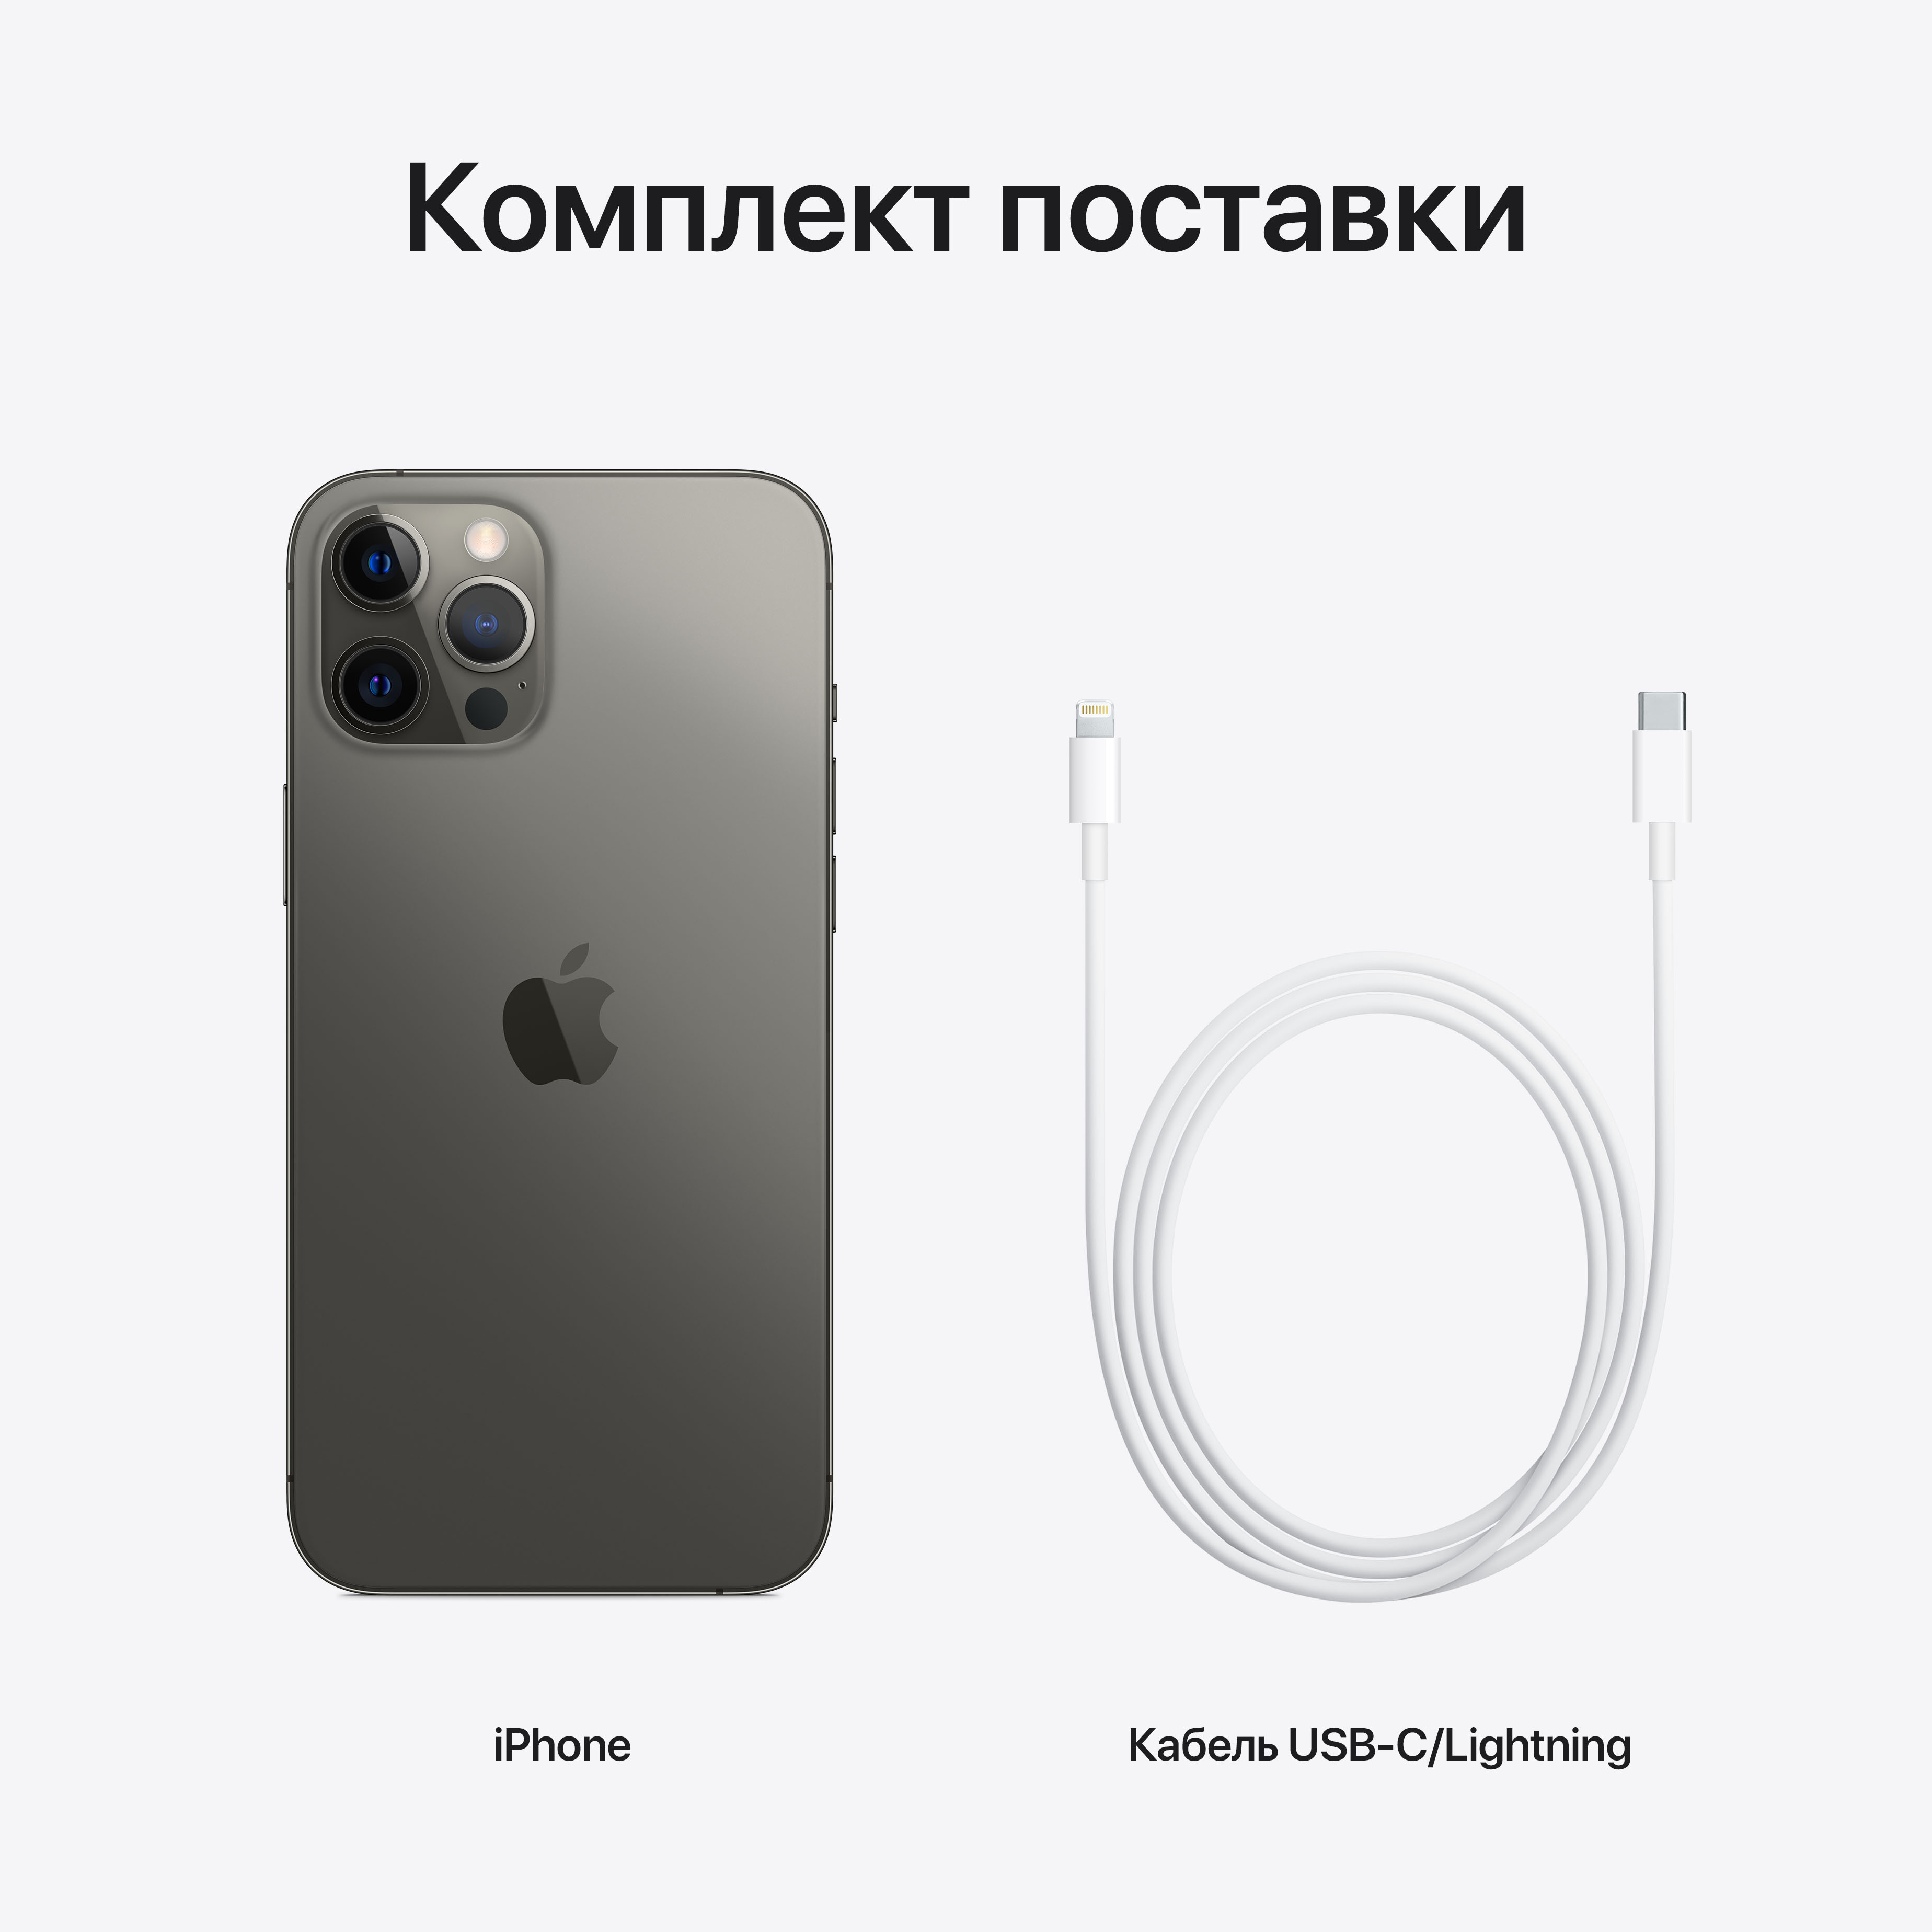 Фото — Apple iPhone 12 Pro, 512 ГБ, графитовый